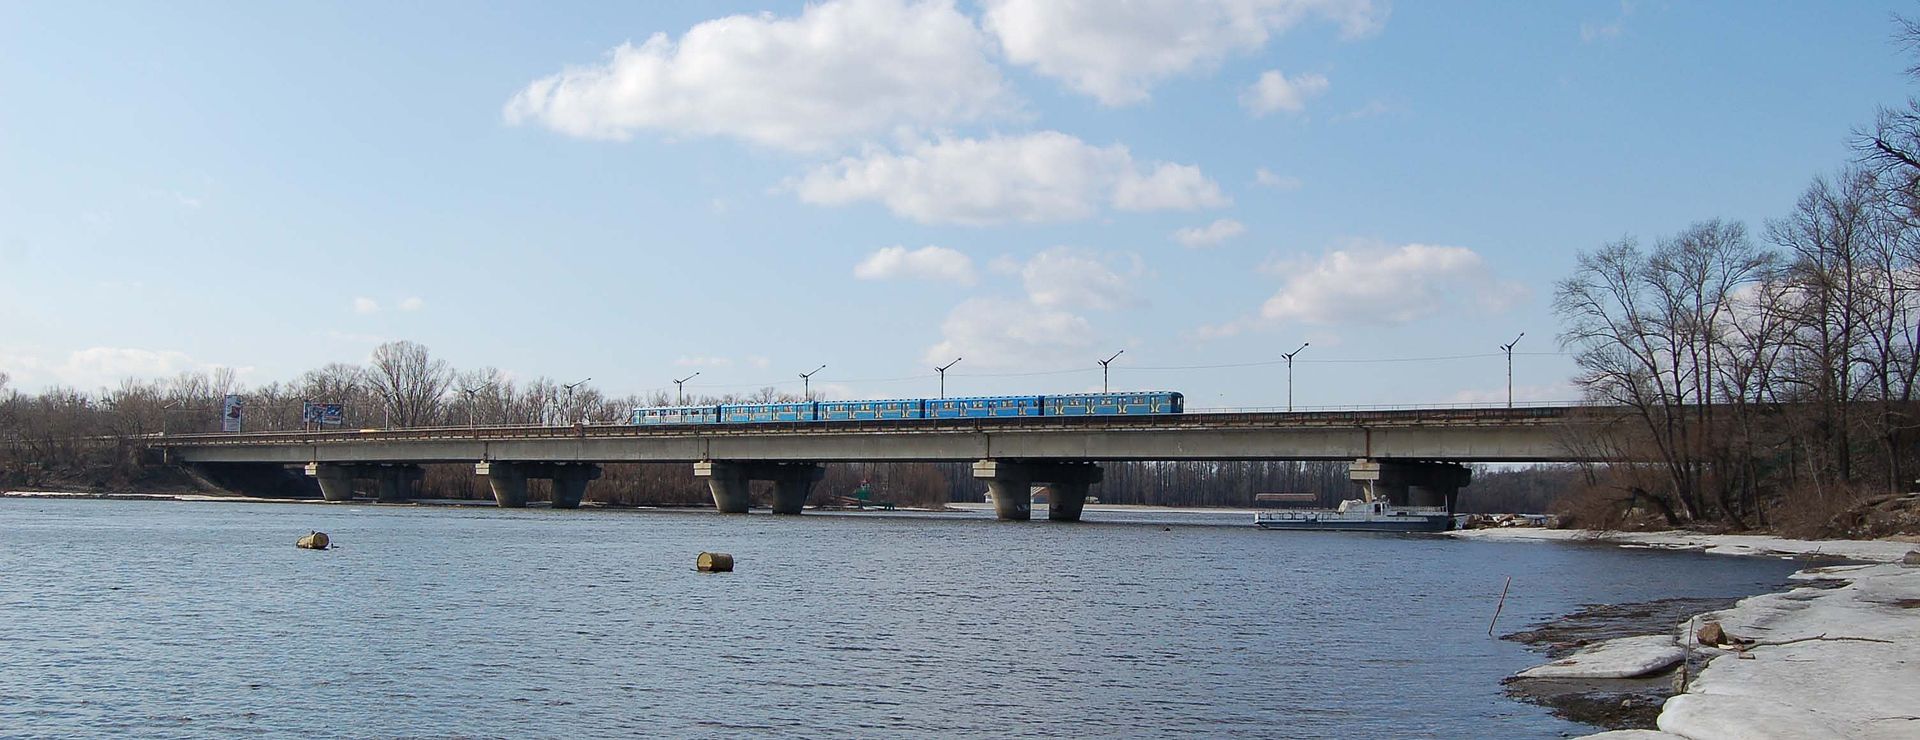 В ночь на субботу будет перекрыто движение транспорта по мосту Метро в Киеве